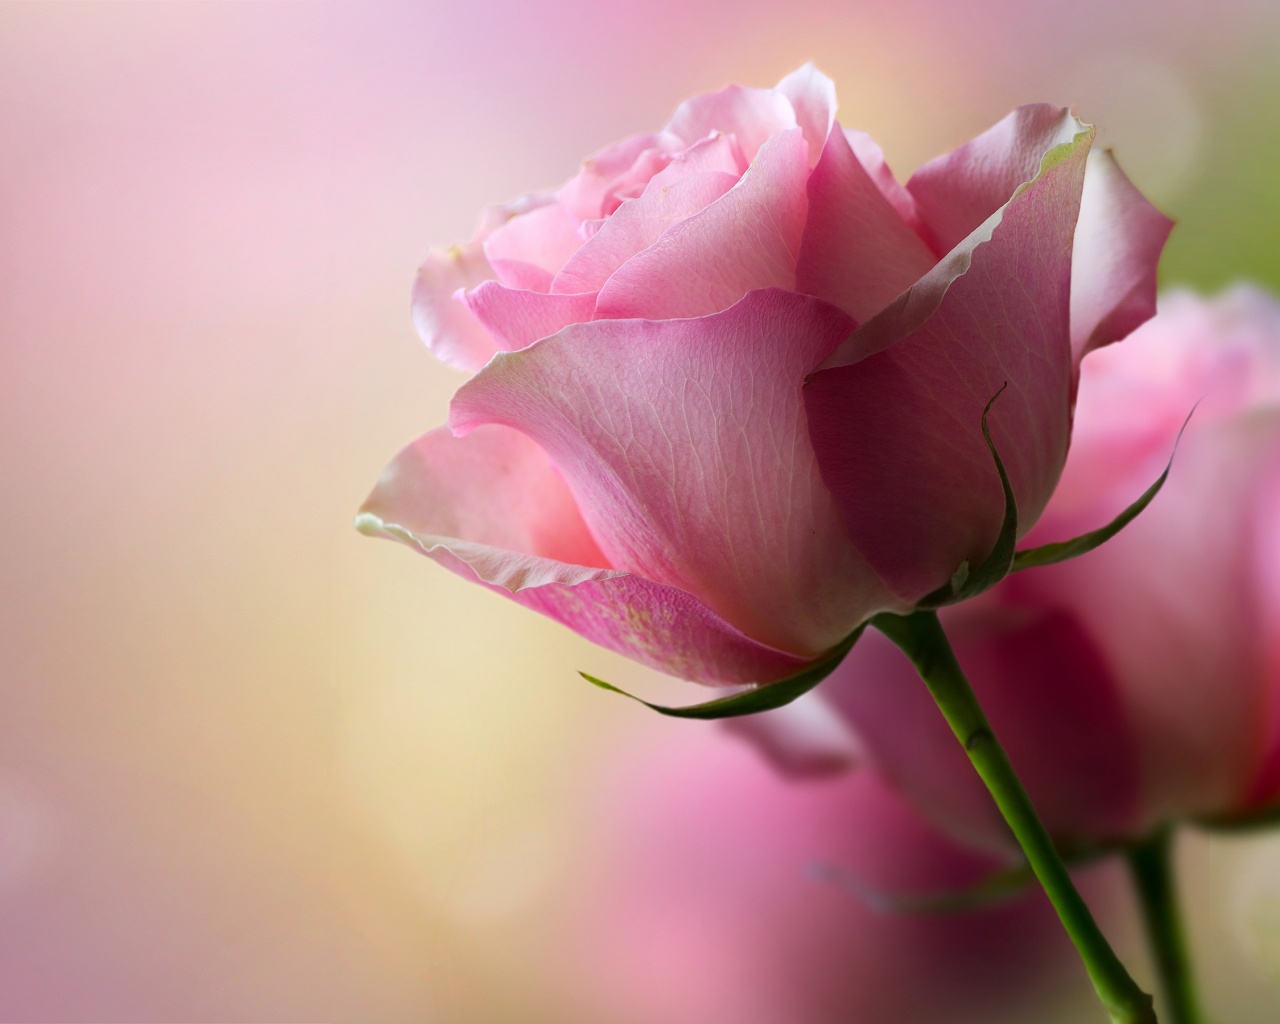 壁纸 粉红玫瑰，鲜花 3840x2160 UHD 4K 高清壁纸, 图片, 照片